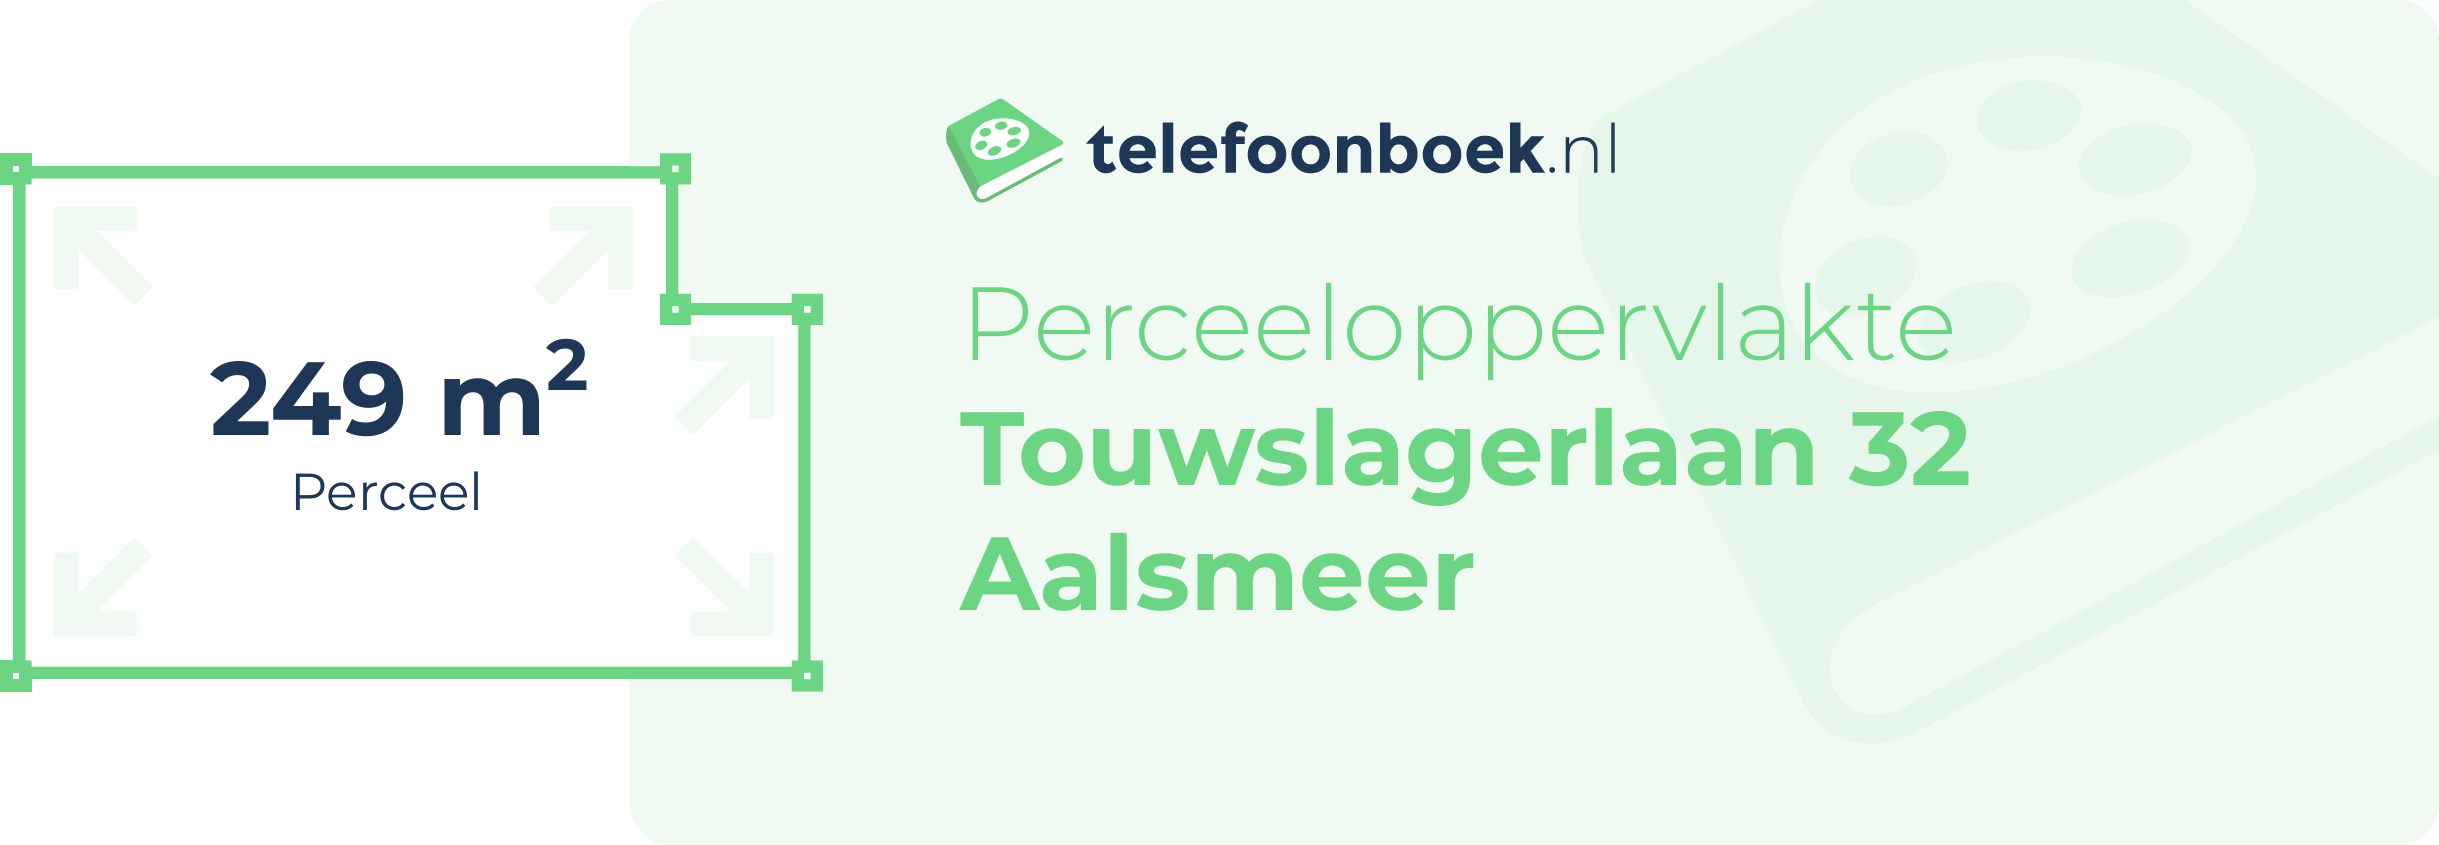 Perceeloppervlakte Touwslagerlaan 32 Aalsmeer